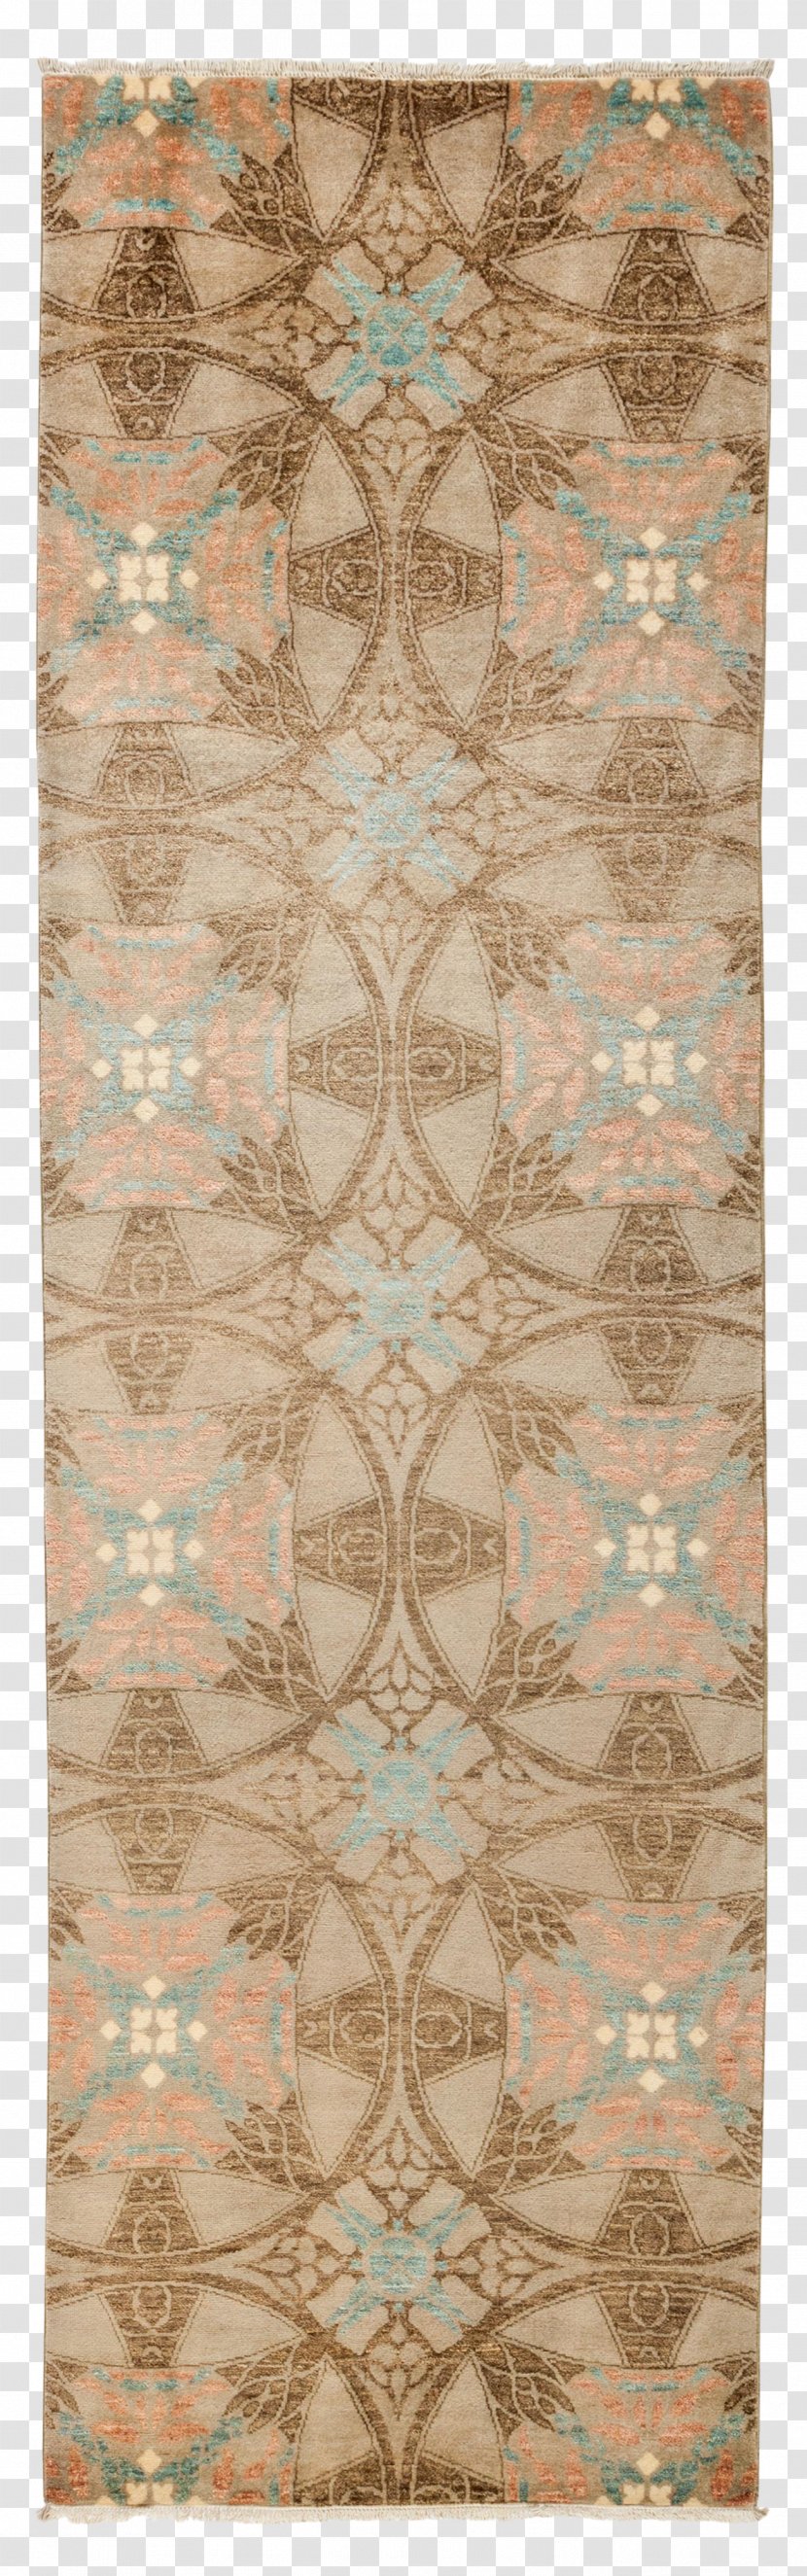 Carpet Suzani Brown Beige Lace - Vintage Tile Transparent PNG